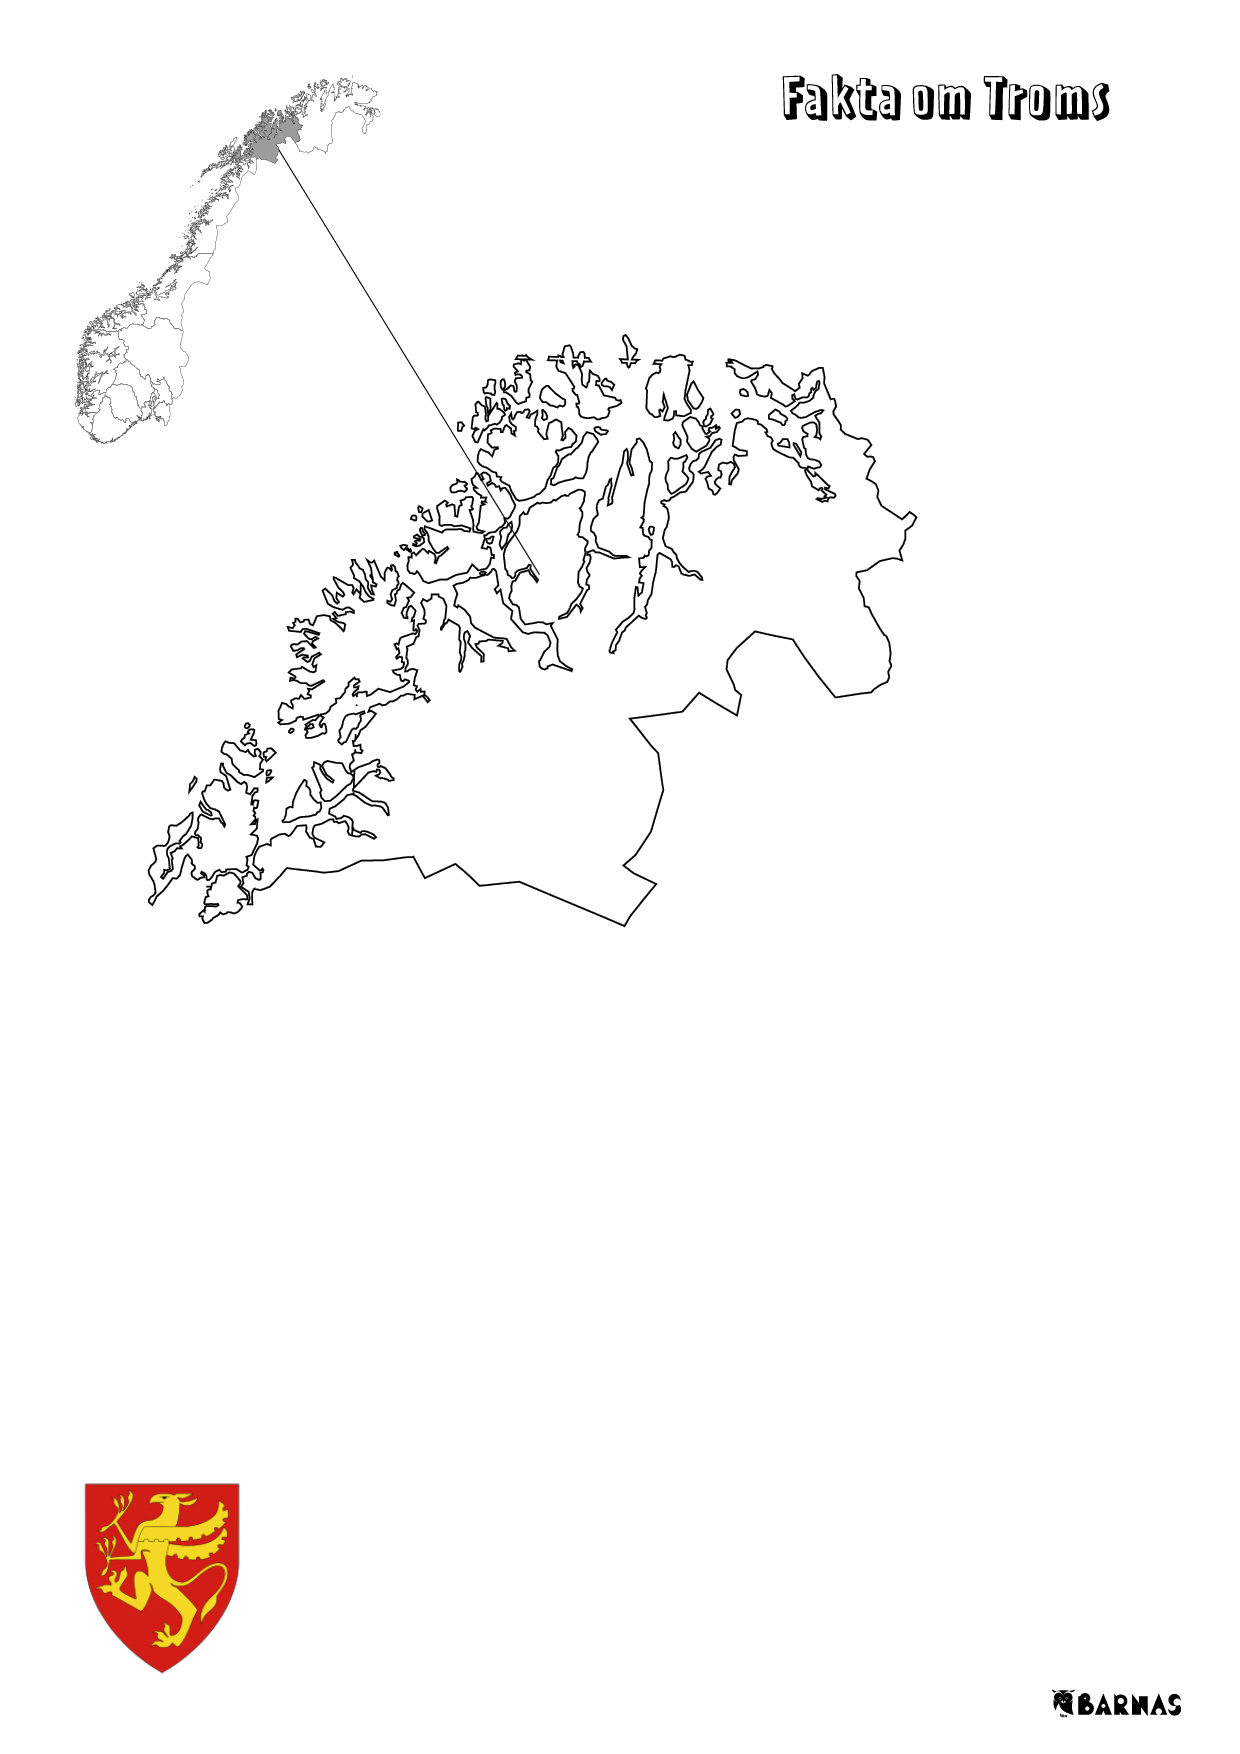 Fylker i Norge